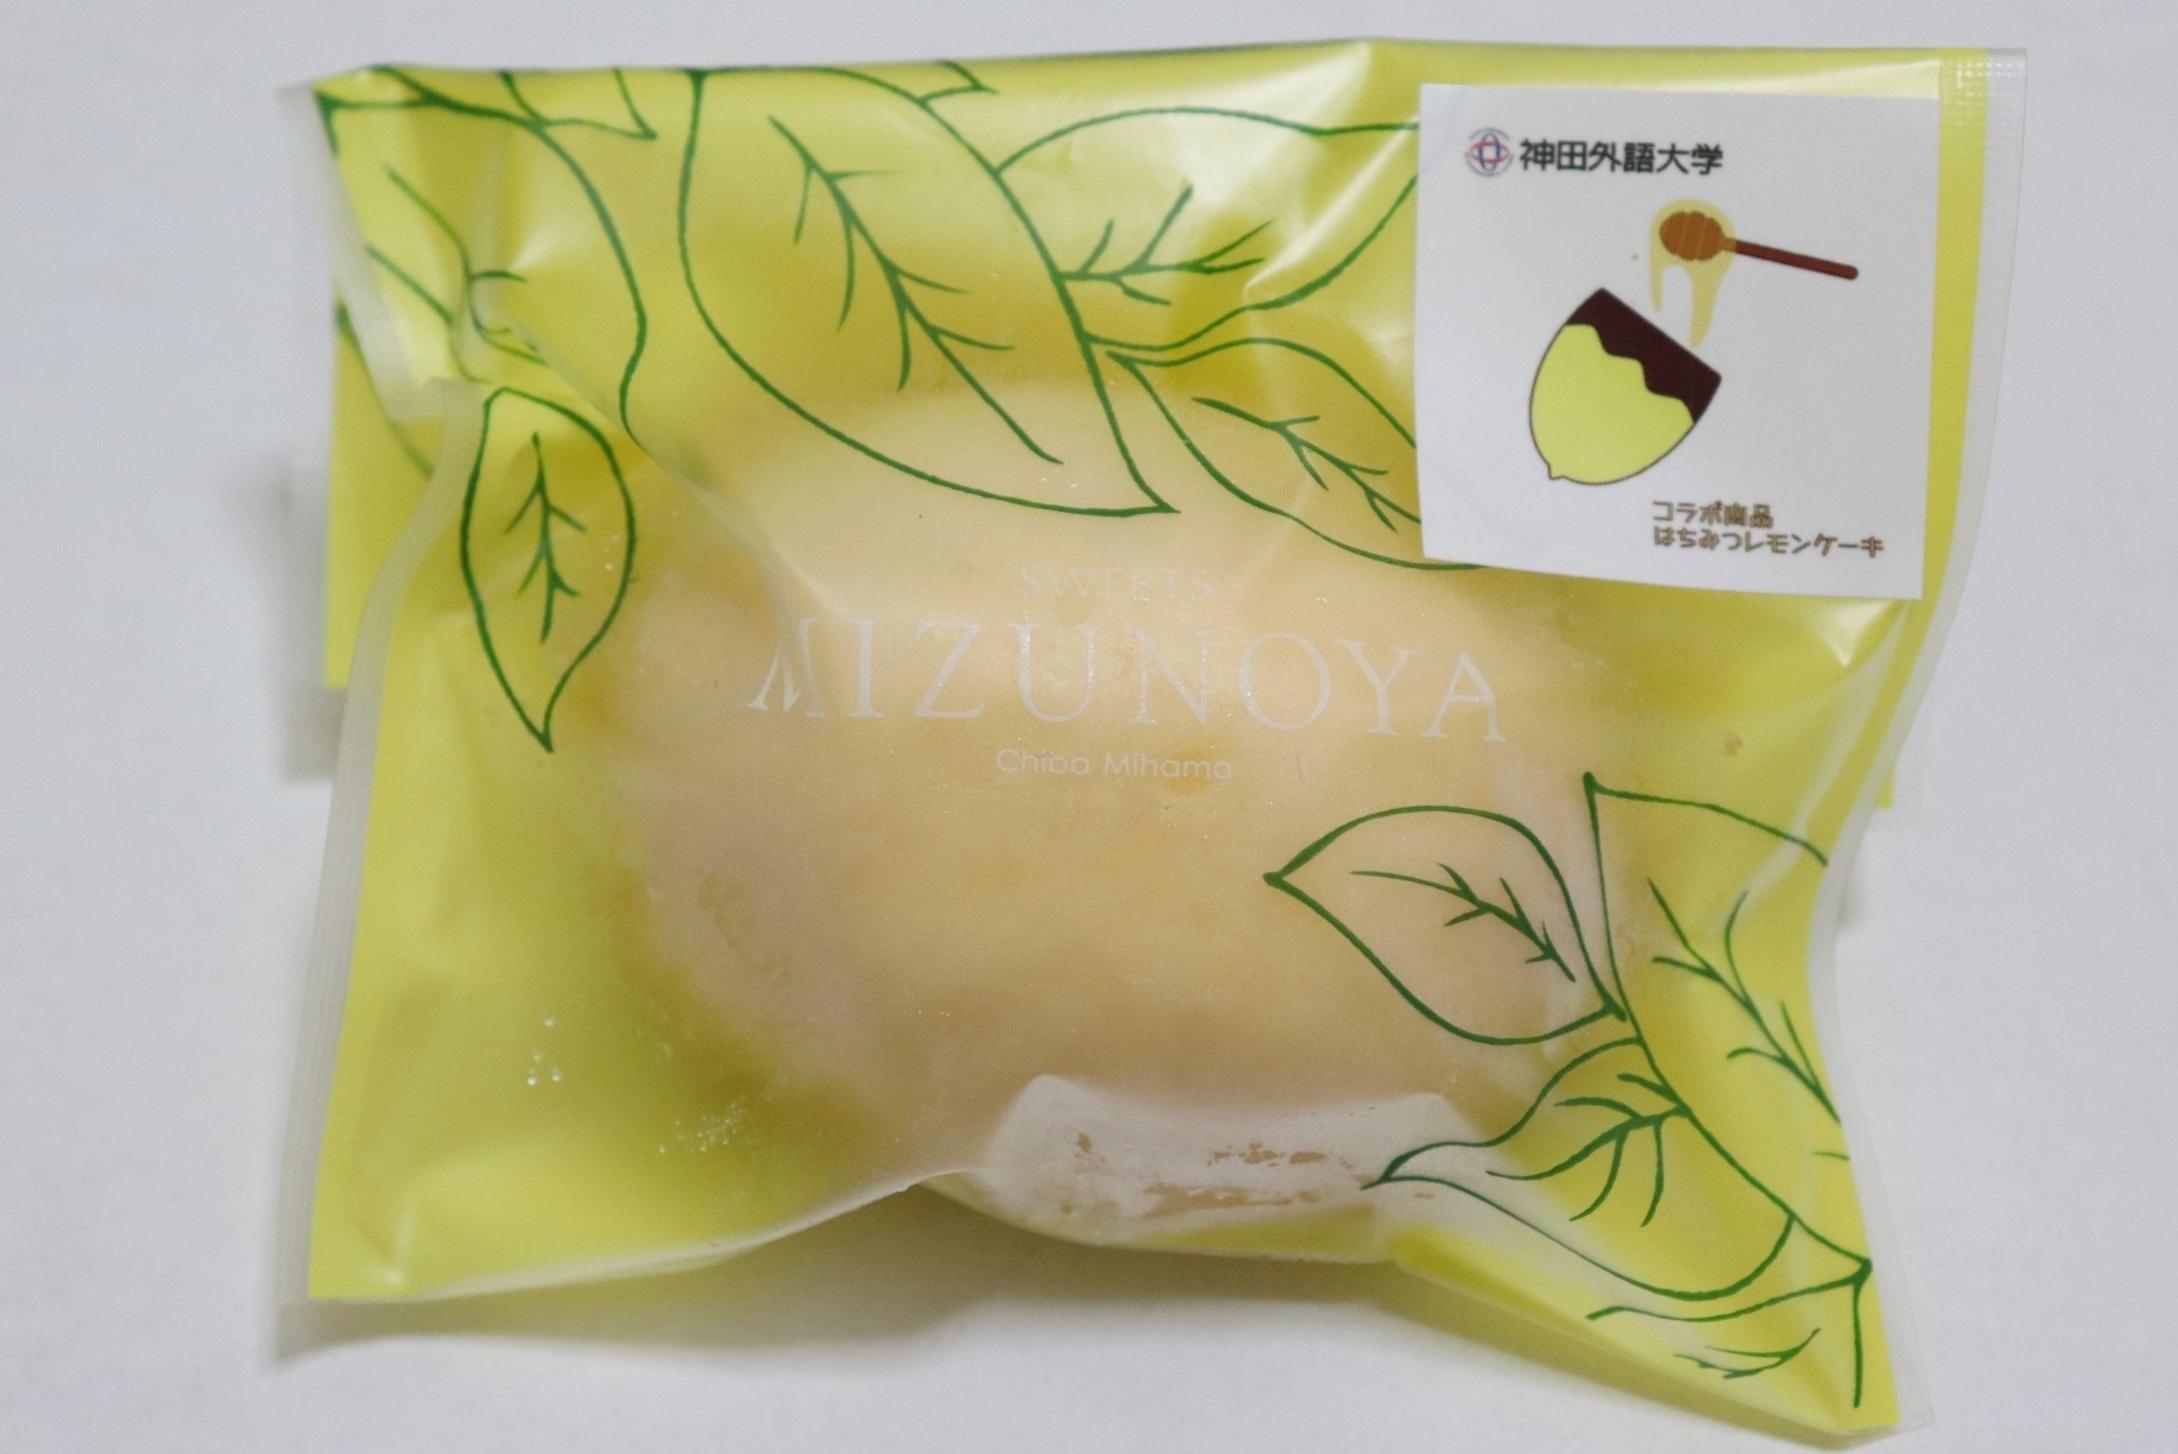 神田外語大学と地元千葉の洋菓子店による商学連携企画「はちみつレモンケーキ」11月4日(木)より販売　～地元の食材を使った地産地消によるSDGsへの取り組み～